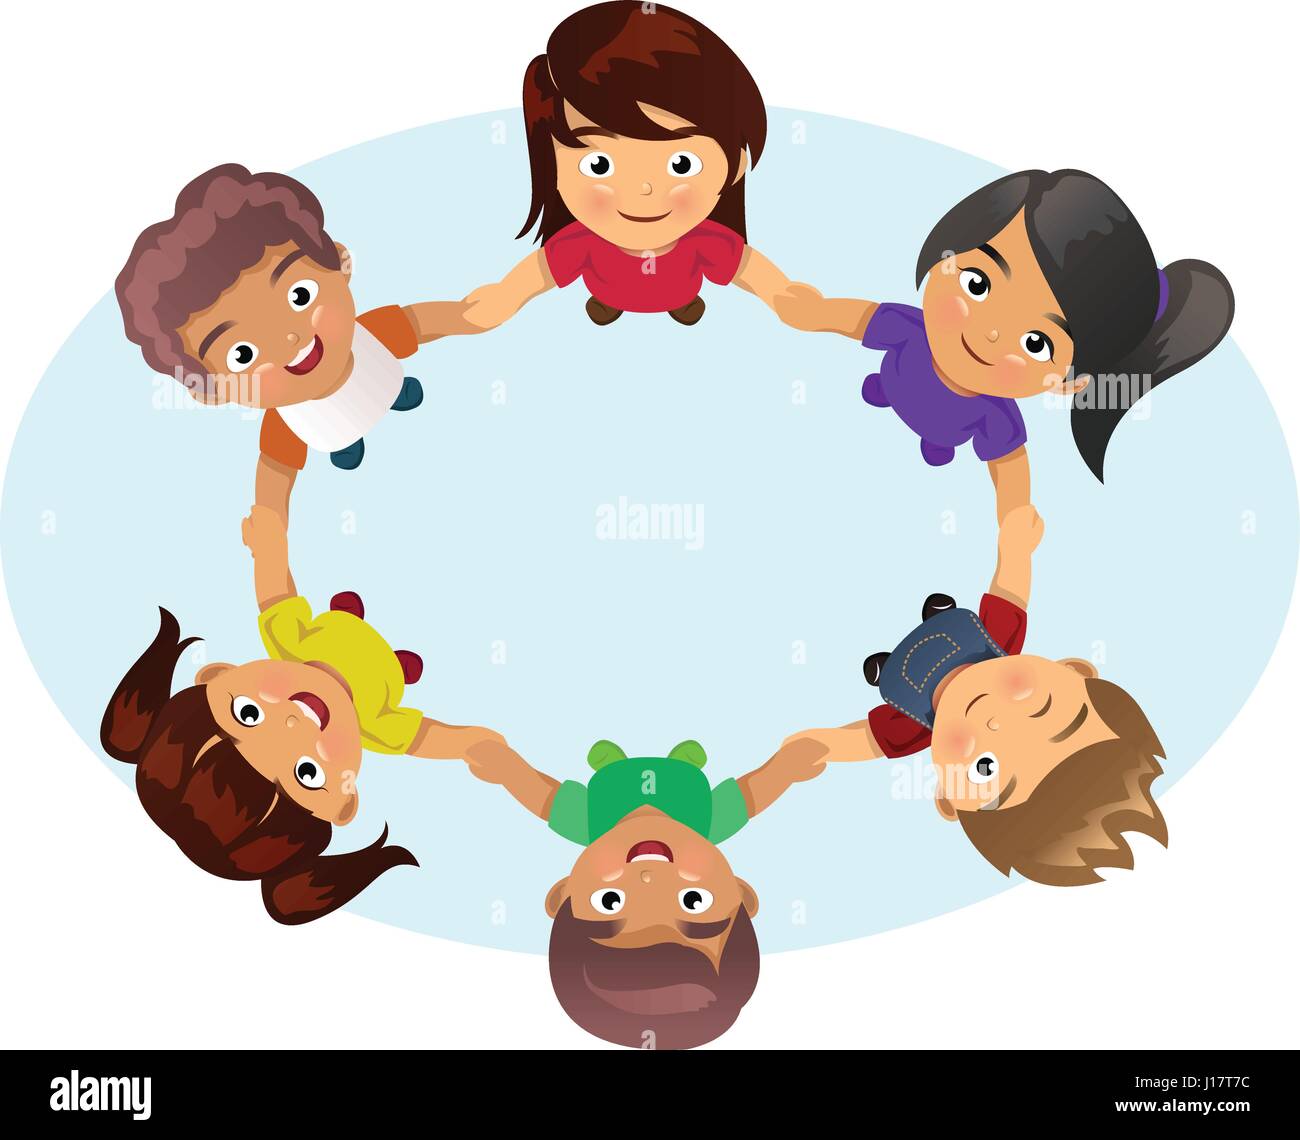 Eine Vektor-Illustration der multi-ethnischen Gruppe der Kinder Hand in Hand Stock Vektor